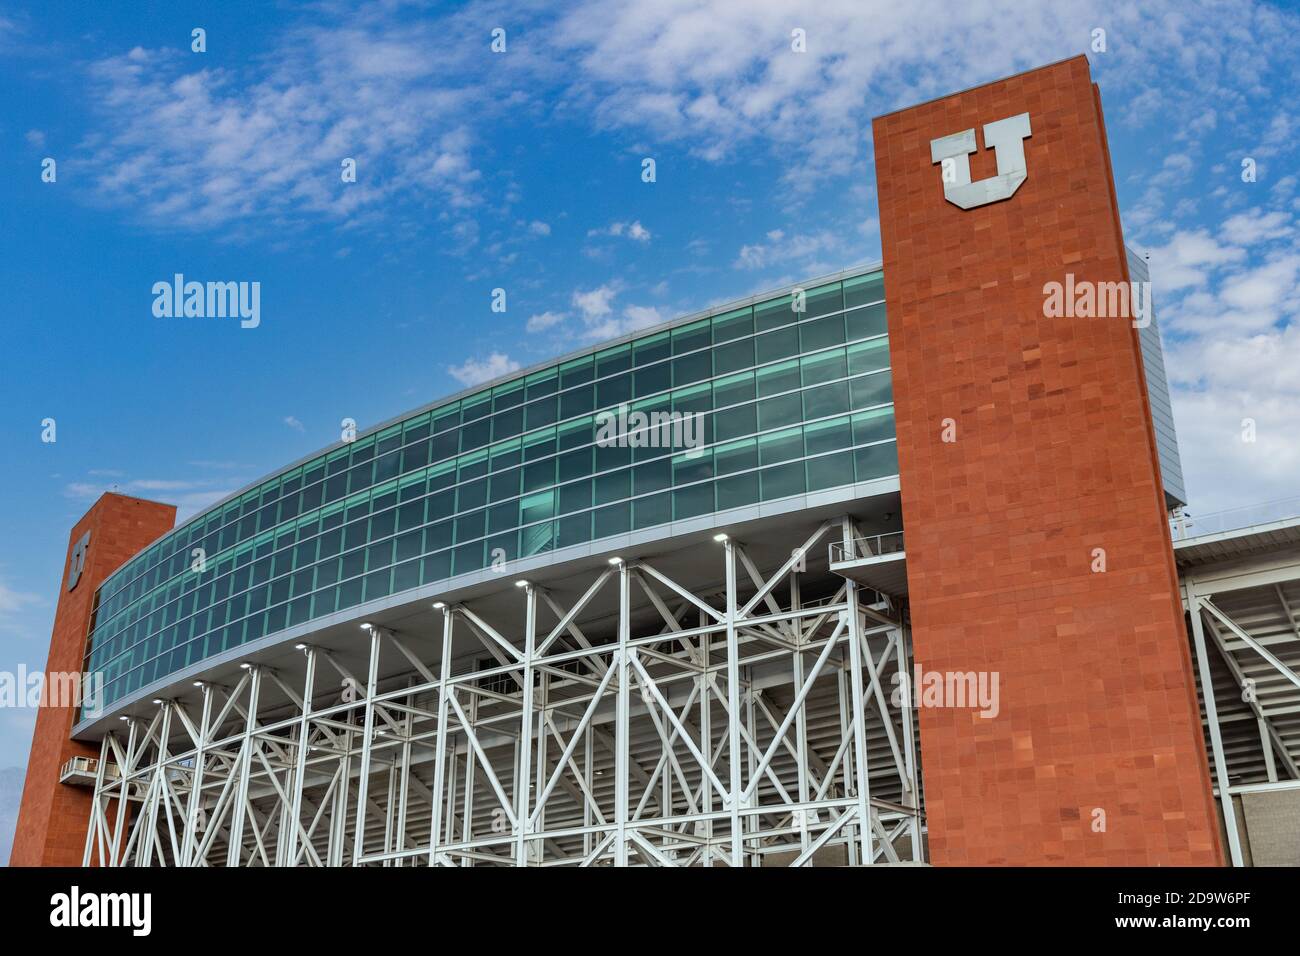 Salt Lake City, UT / USA - 6 novembre 2020 : stade Rice-Eccles, stade de l'équipe de football Utah Utes, et Jeux olympiques d'hiver de 2002 Banque D'Images